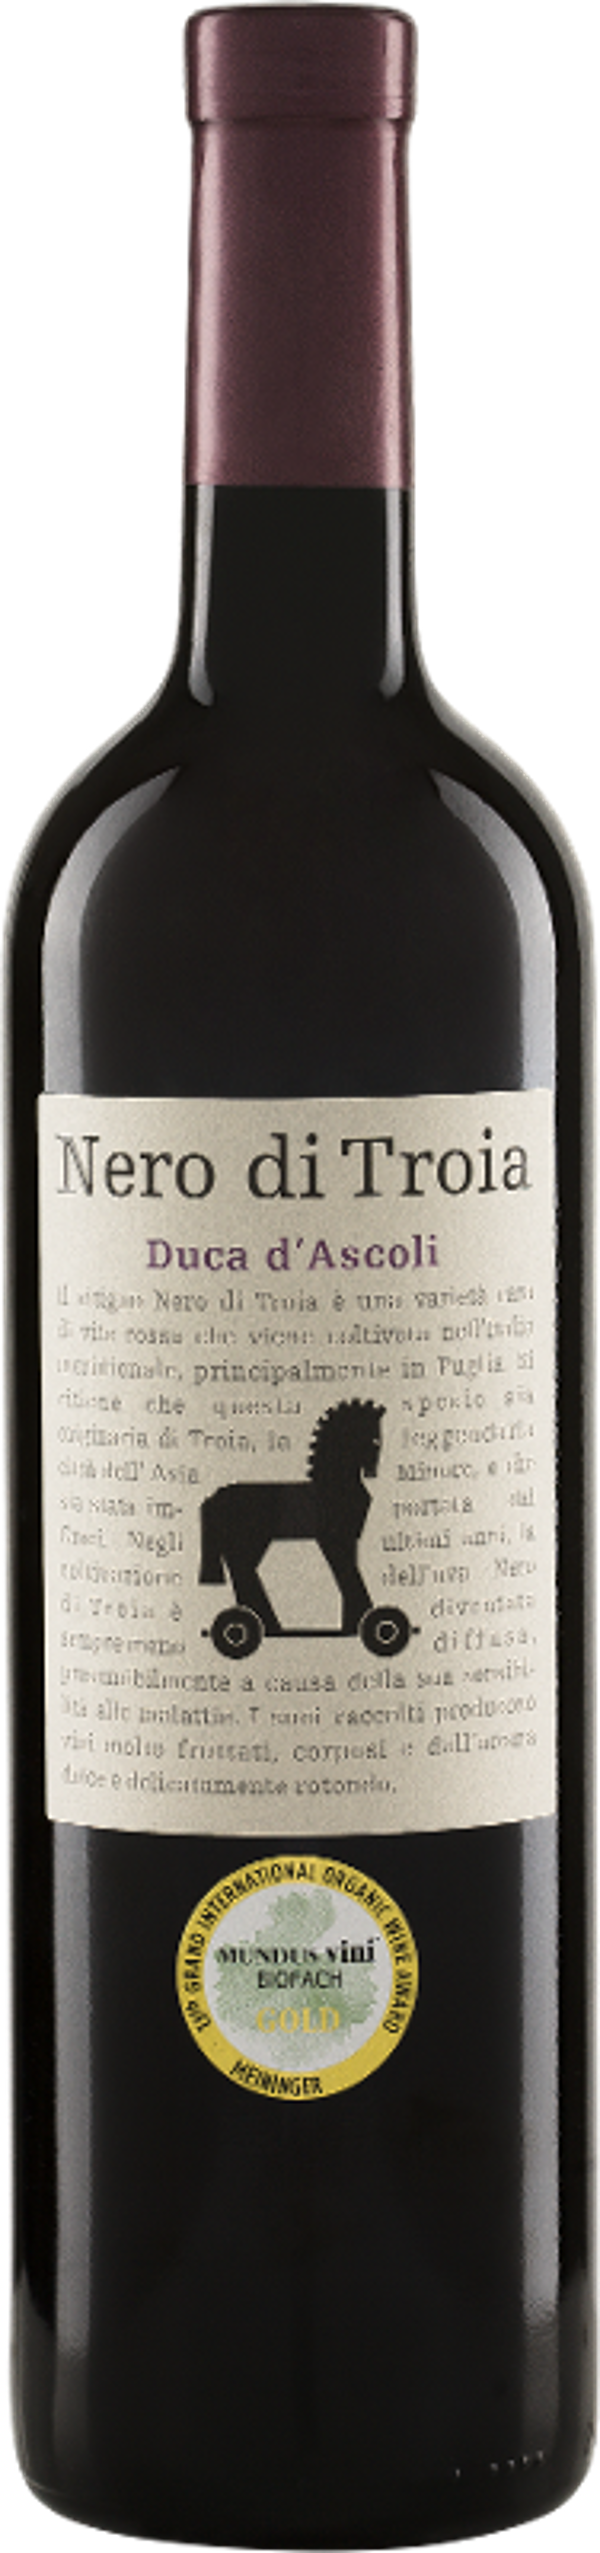 Produktfoto zu Nero di Troia Duca d'Ascoli Puglia IGT